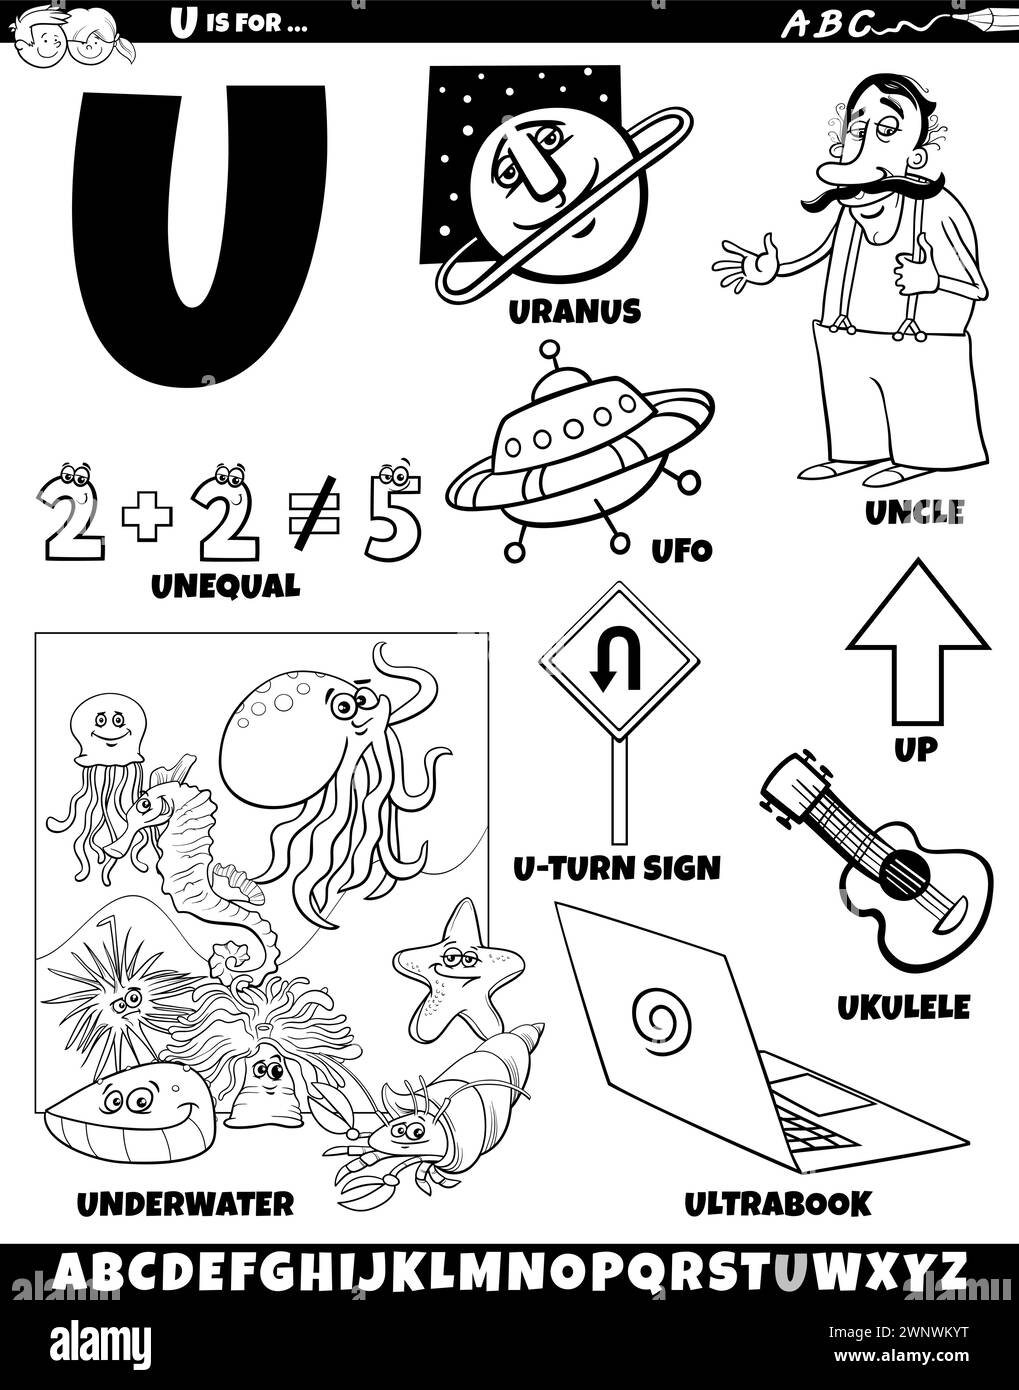 Illustration de dessin animé d'objets et de caractères définis pour la page de coloriage lettre U. Illustration de Vecteur